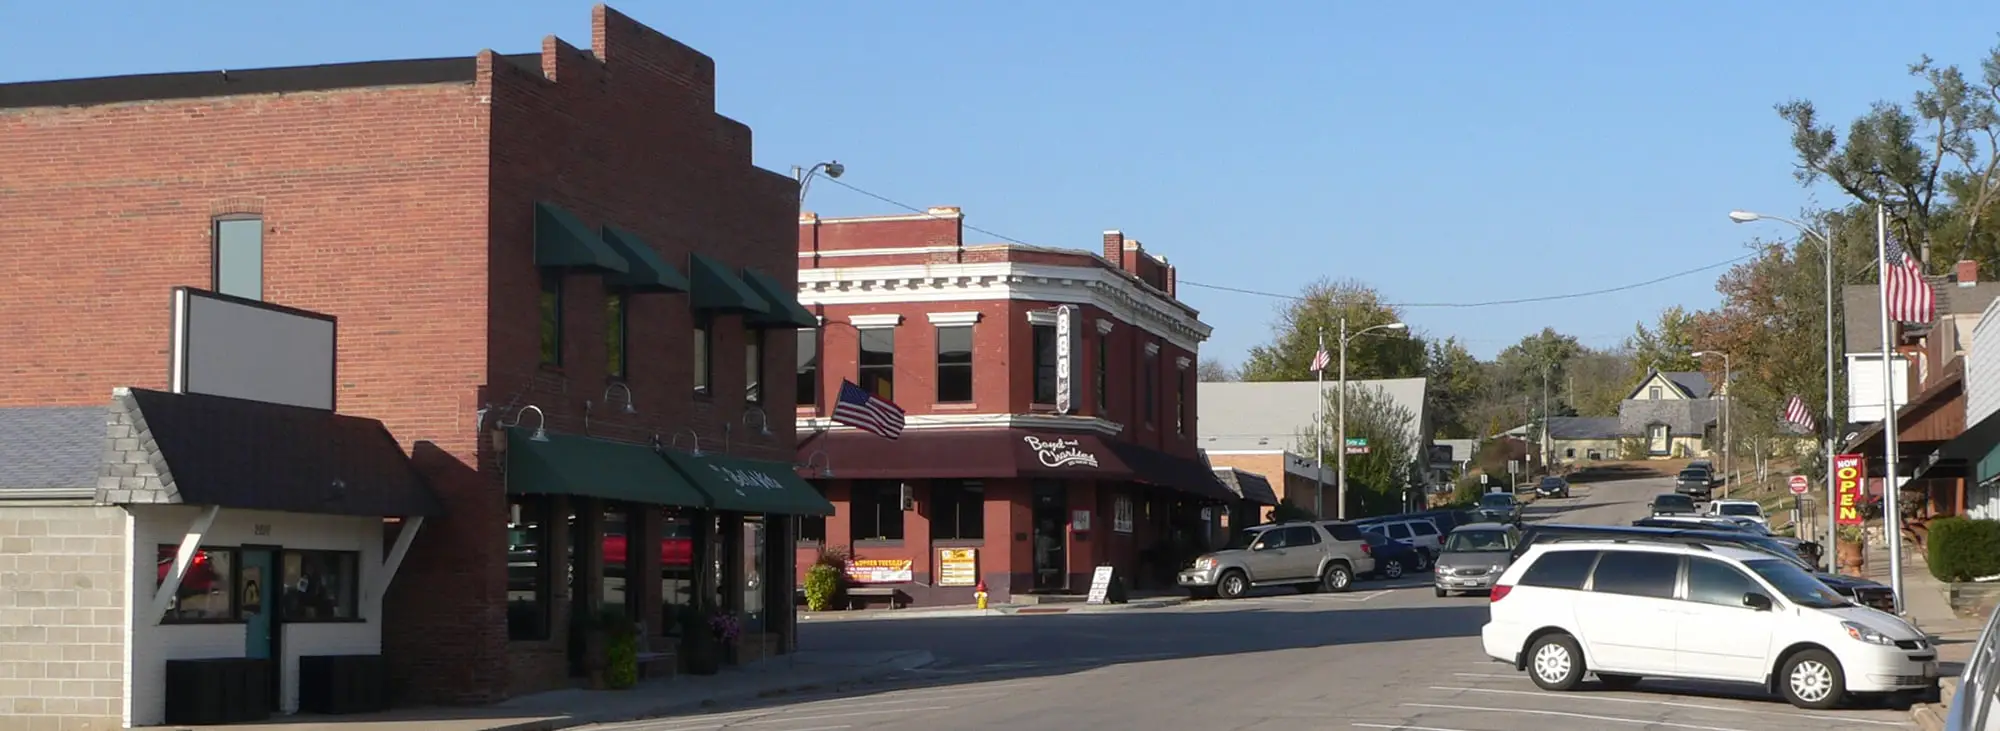 Downtown Elkhorn NE | Skyline Ranches | Elkhorn NE Neighborhoods